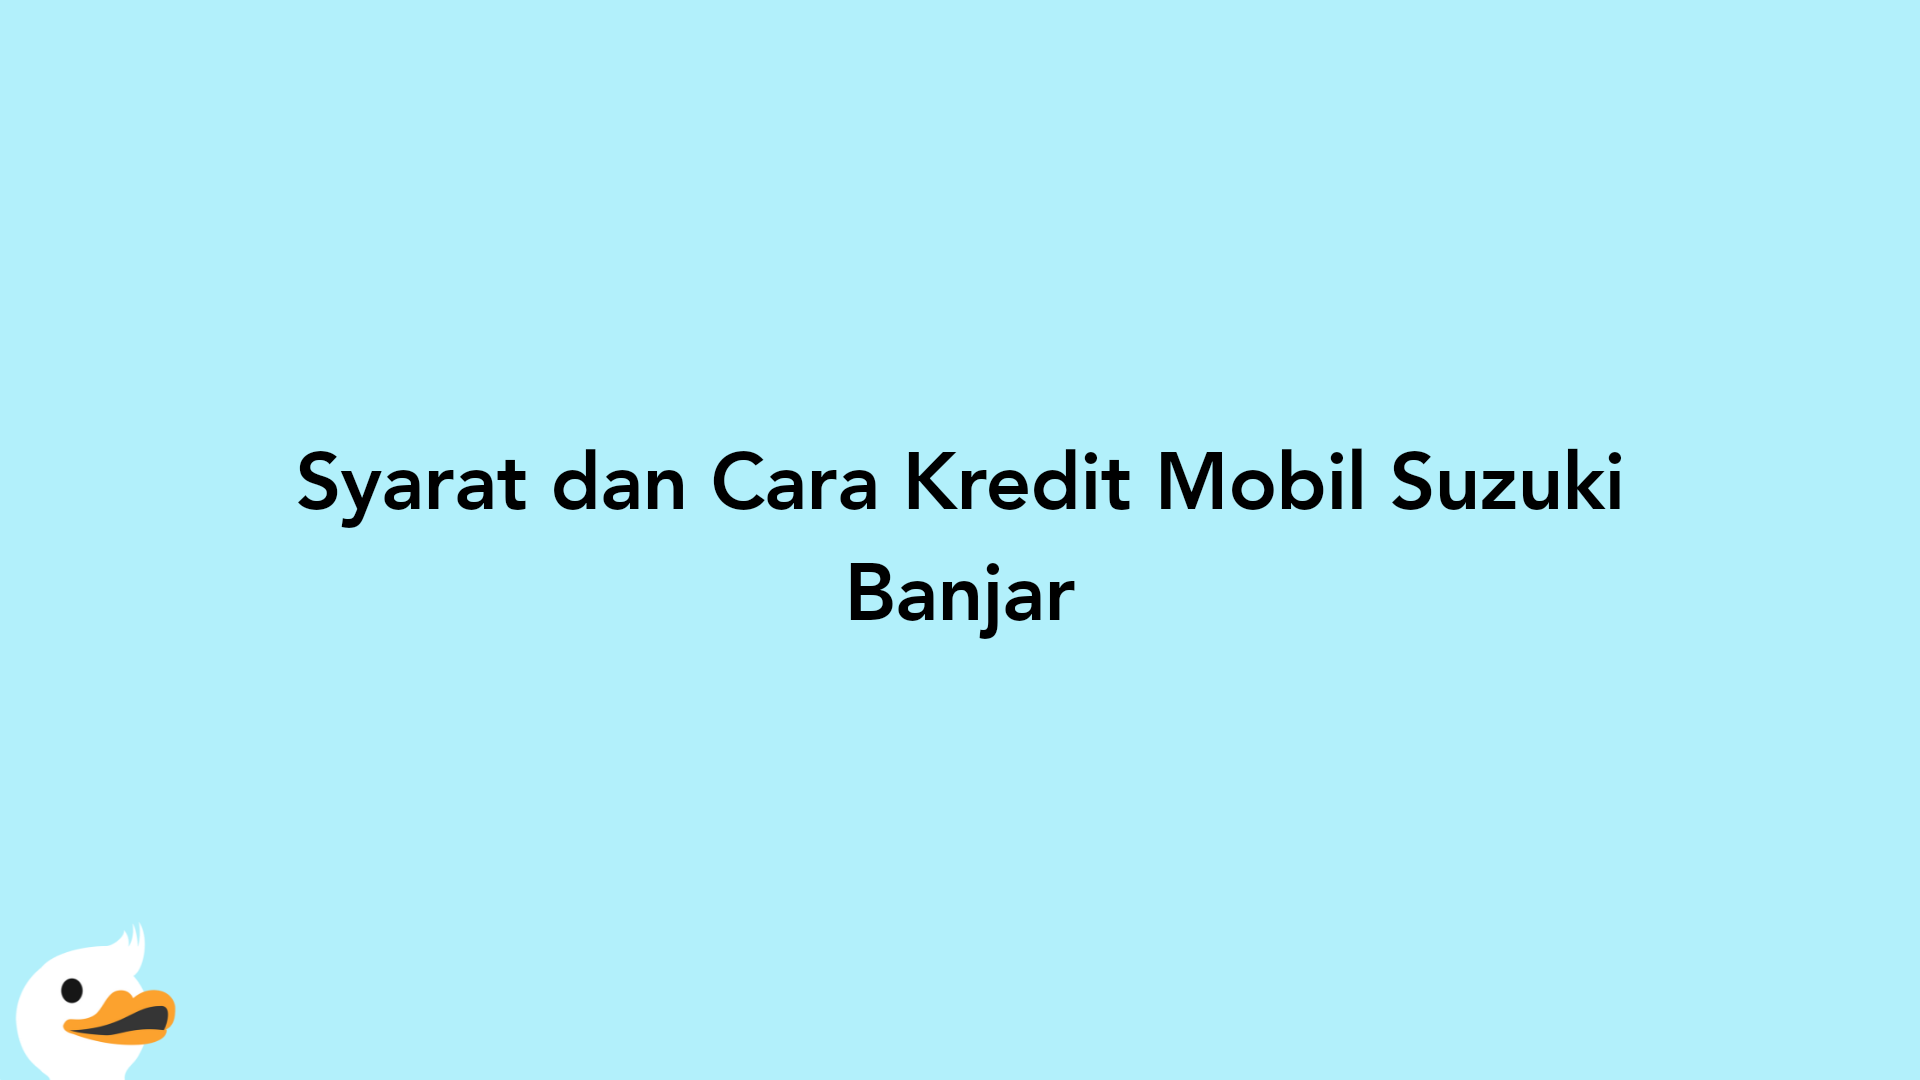 Syarat dan Cara Kredit Mobil Suzuki Banjar